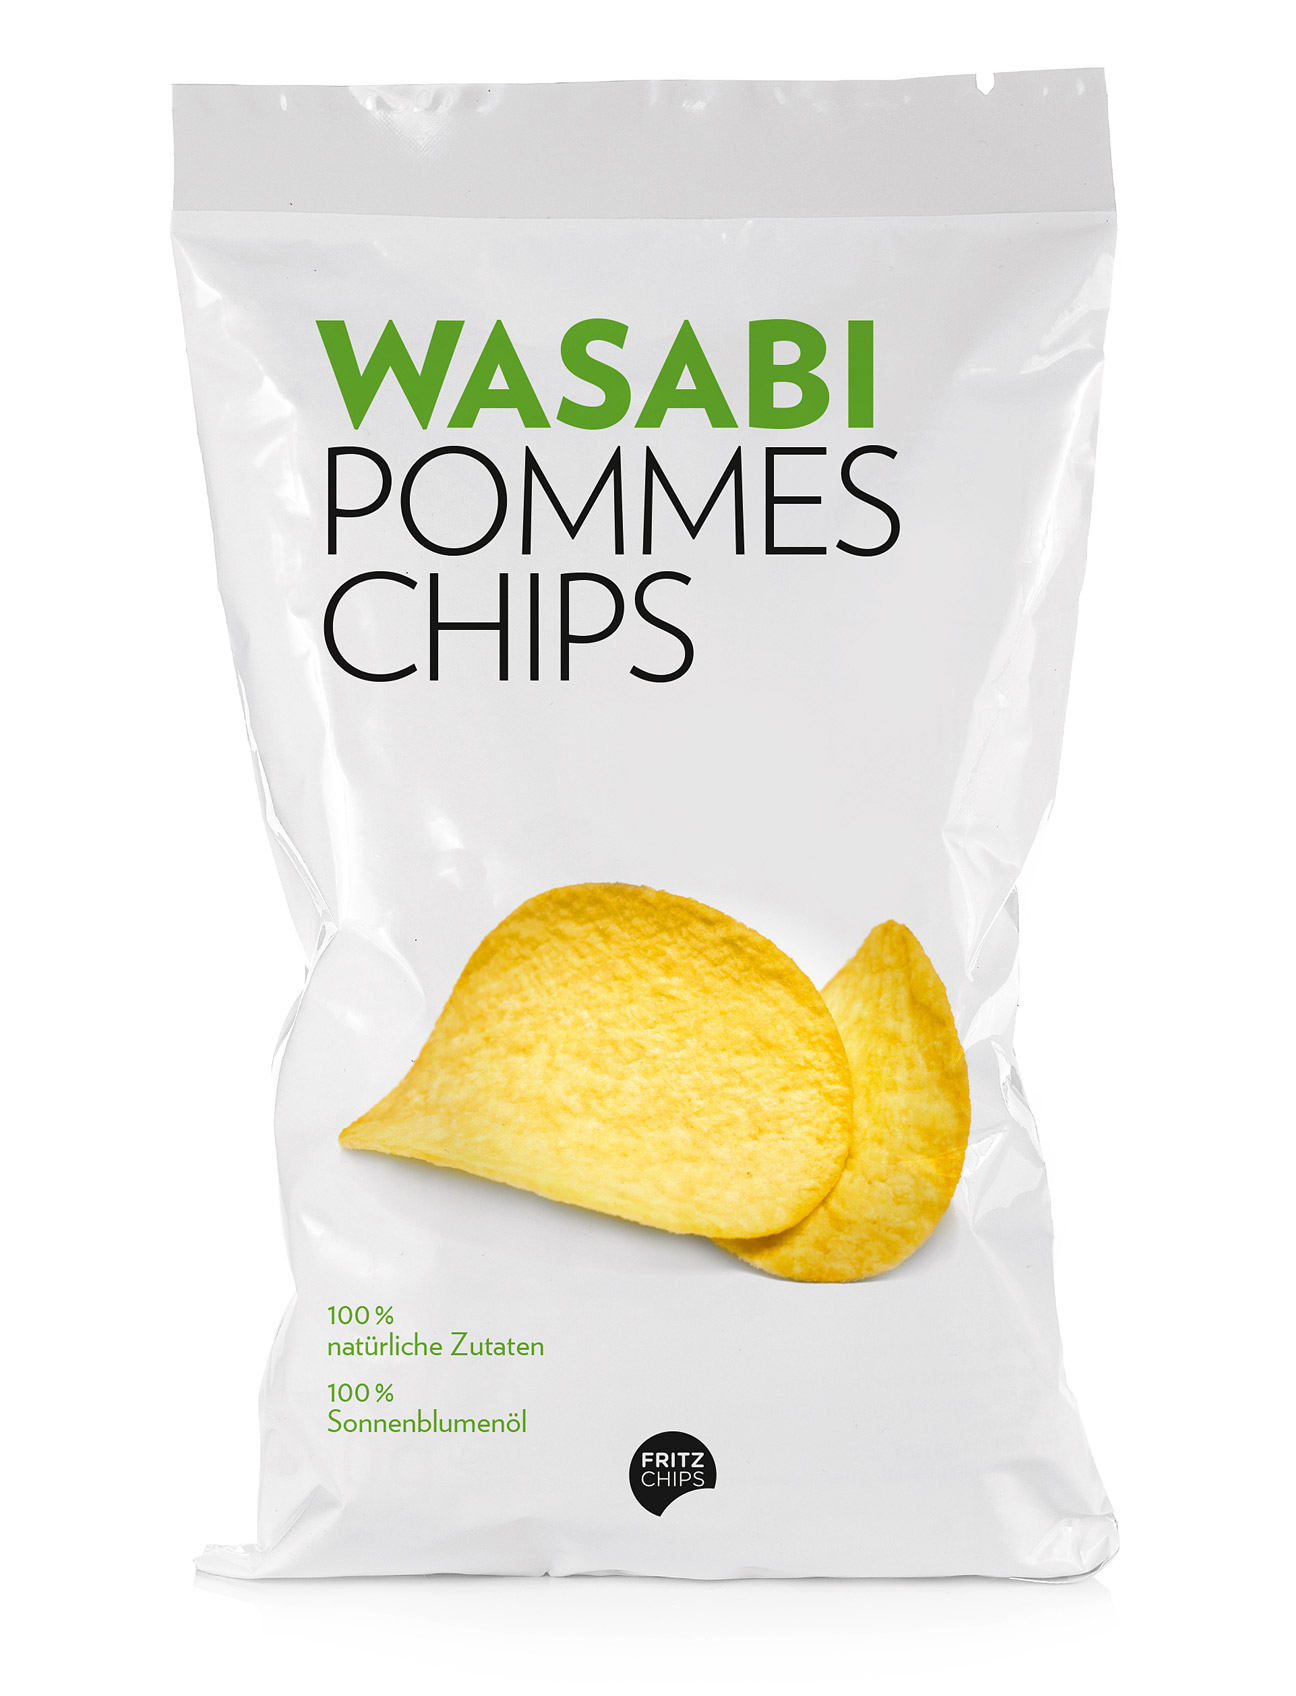 chips_verpackung_wasabi